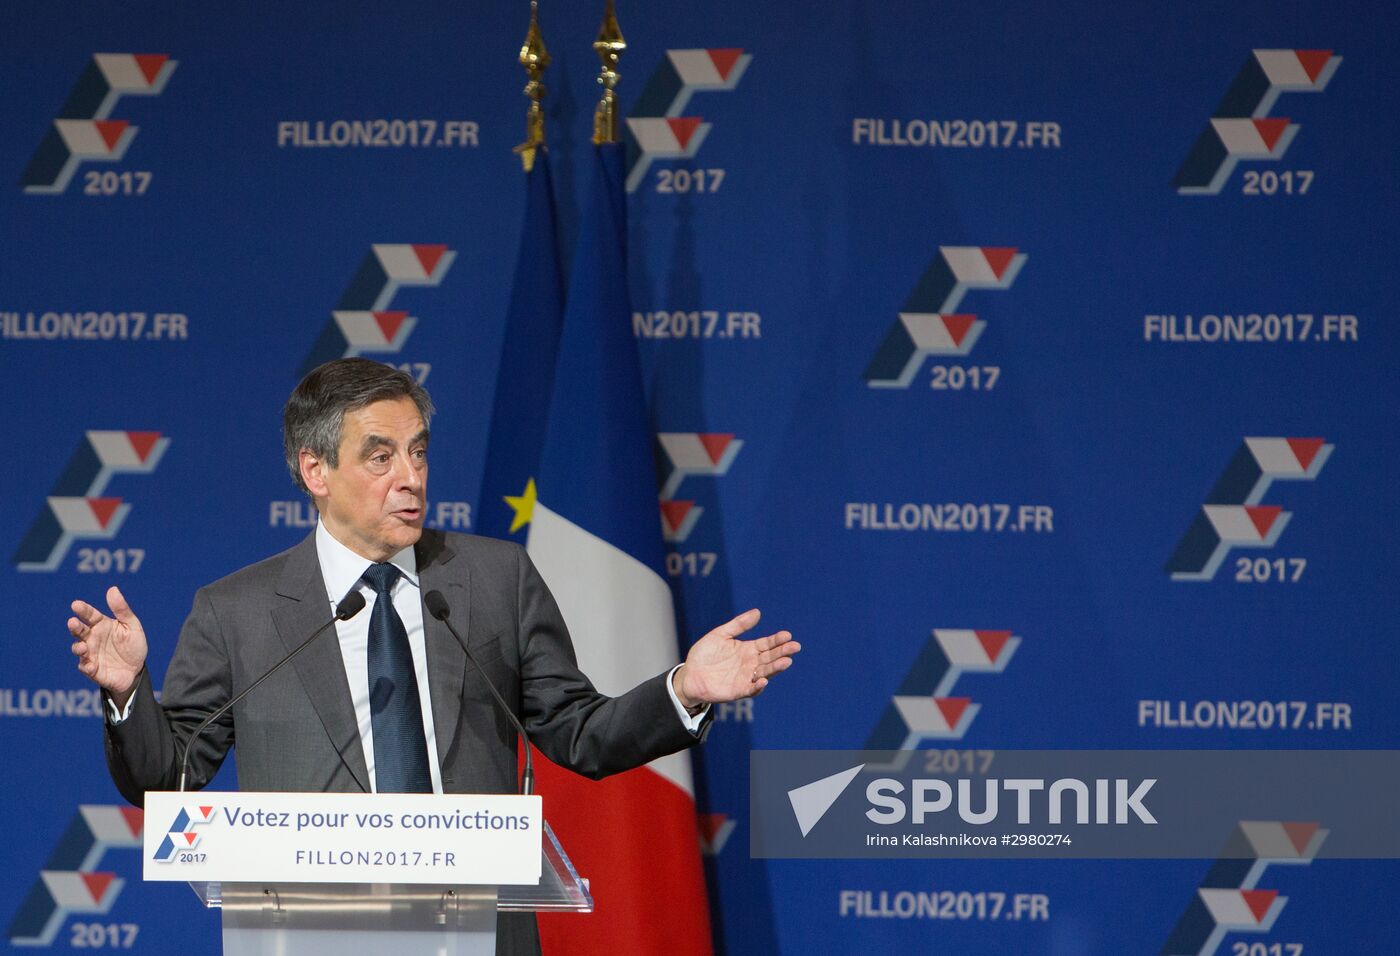 François Fillon delivers election campaign speech in Paris